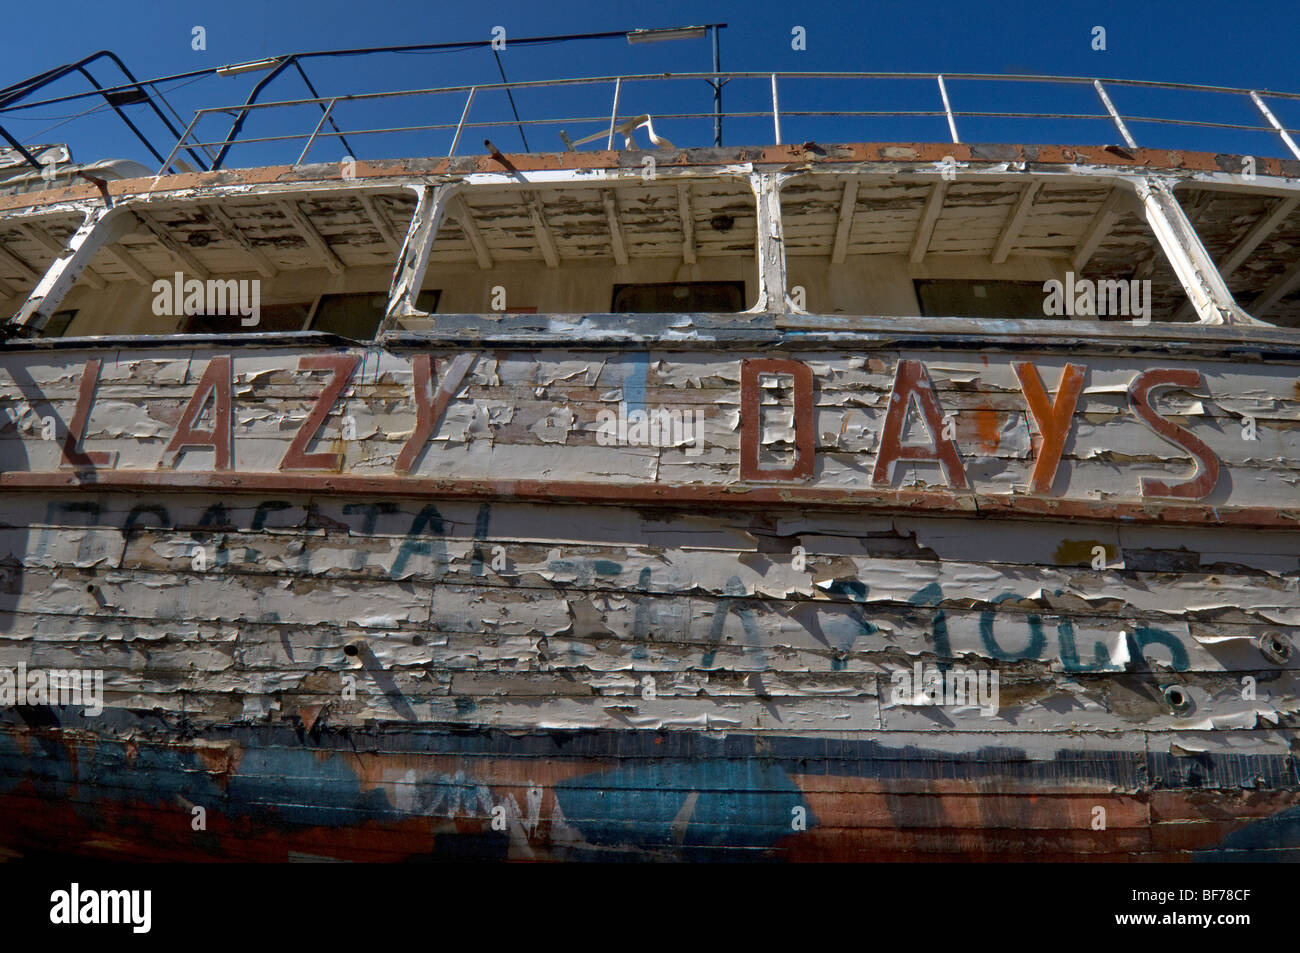 Sfald vernice su un piacere antico sistema di cottura a vapore chiamato 'Lazy Days' in attesa di restauro in un cantiere in Grecia. Foto Stock